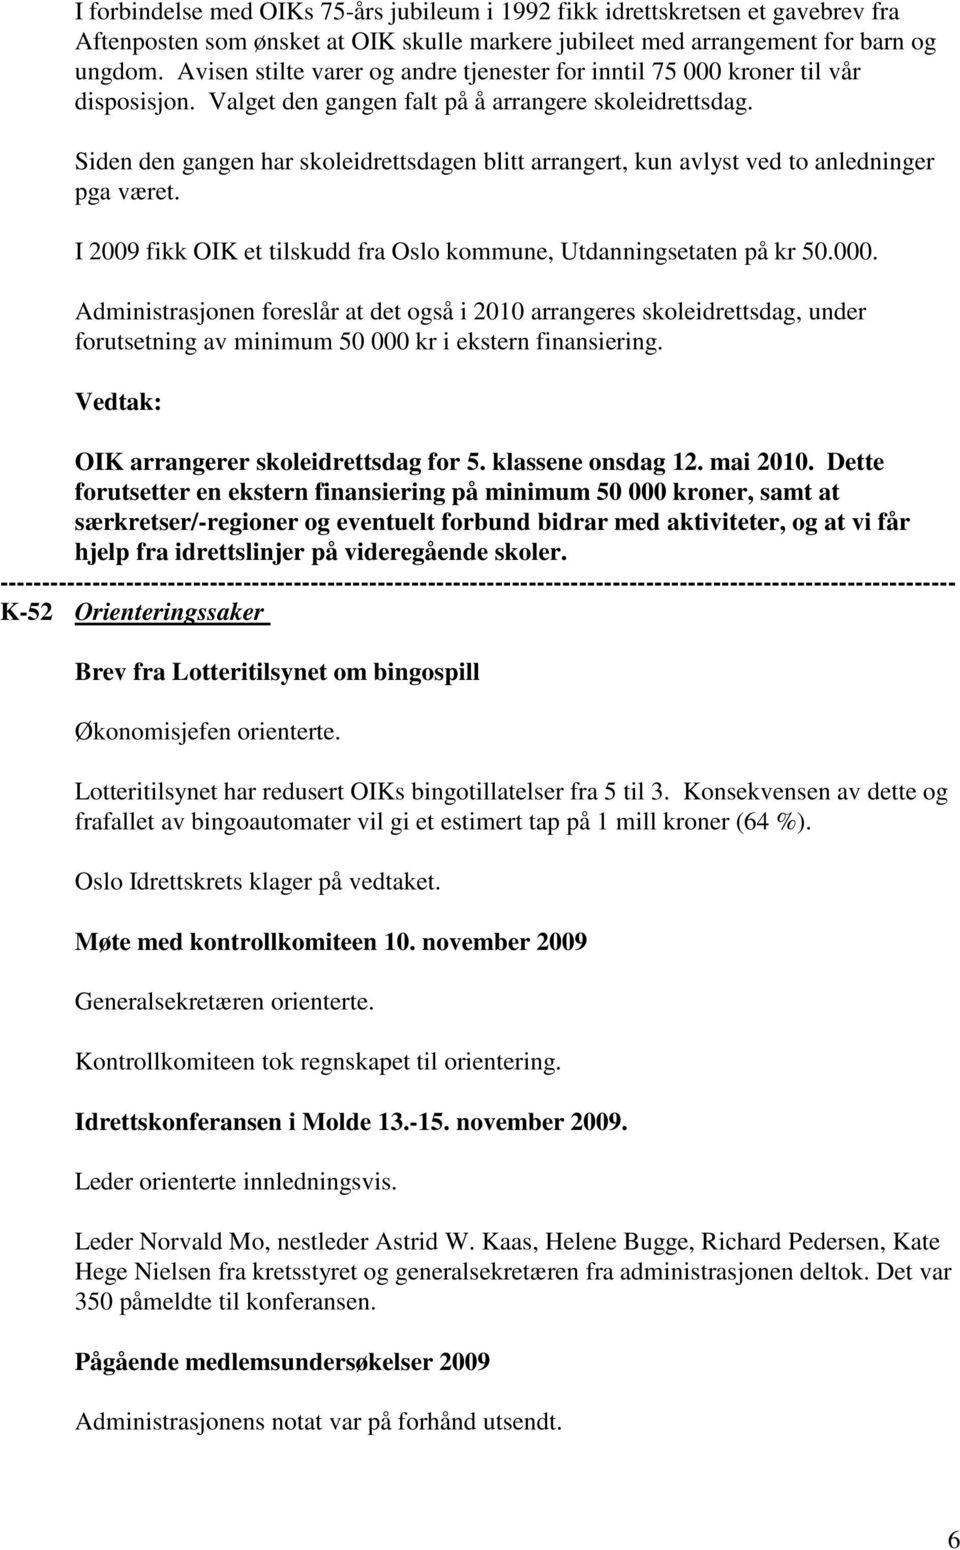 Siden den gangen har skoleidrettsdagen blitt arrangert, kun avlyst ved to anledninger pga været. I 2009 fikk OIK et tilskudd fra Oslo kommune, Utdanningsetaten på kr 50.000.